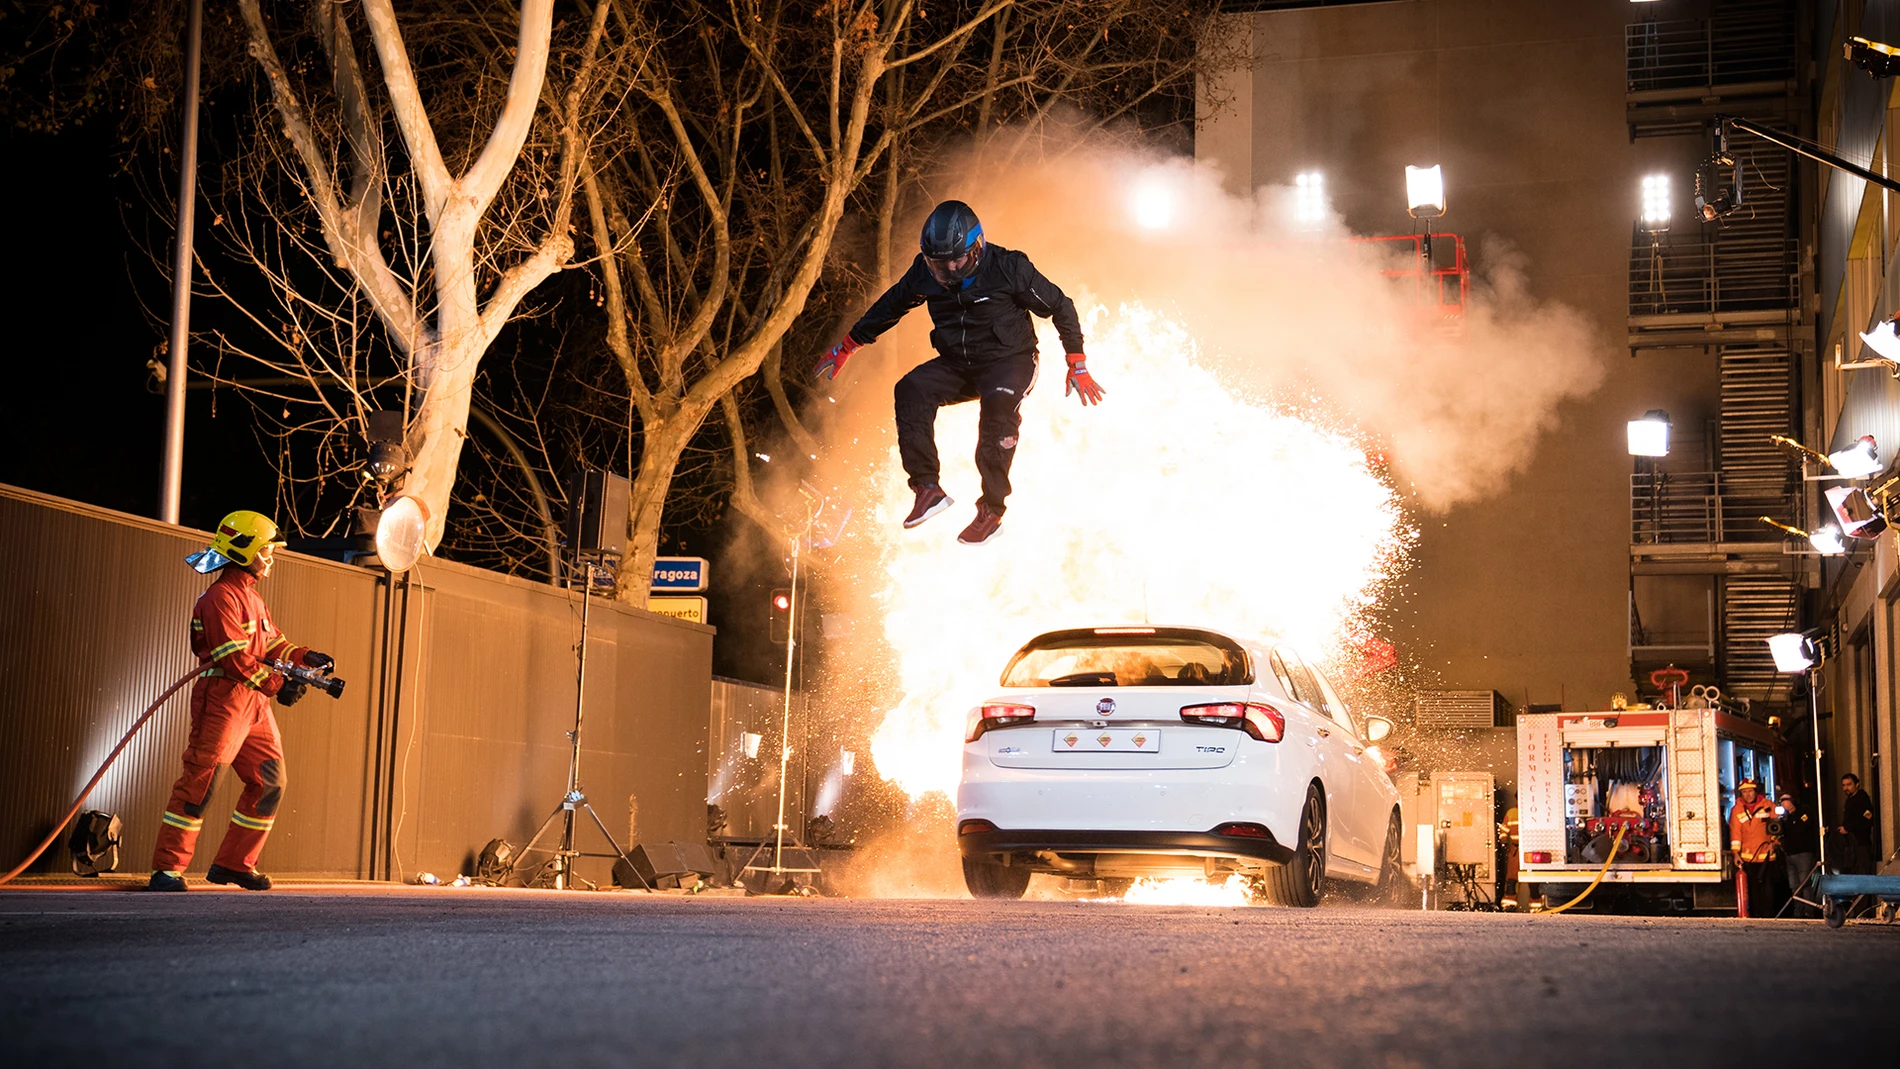 El reto más peligroso de 'El Hormiguero 3.0': Jordi évole y Pablo Motos, en un coche envuelto en llamas